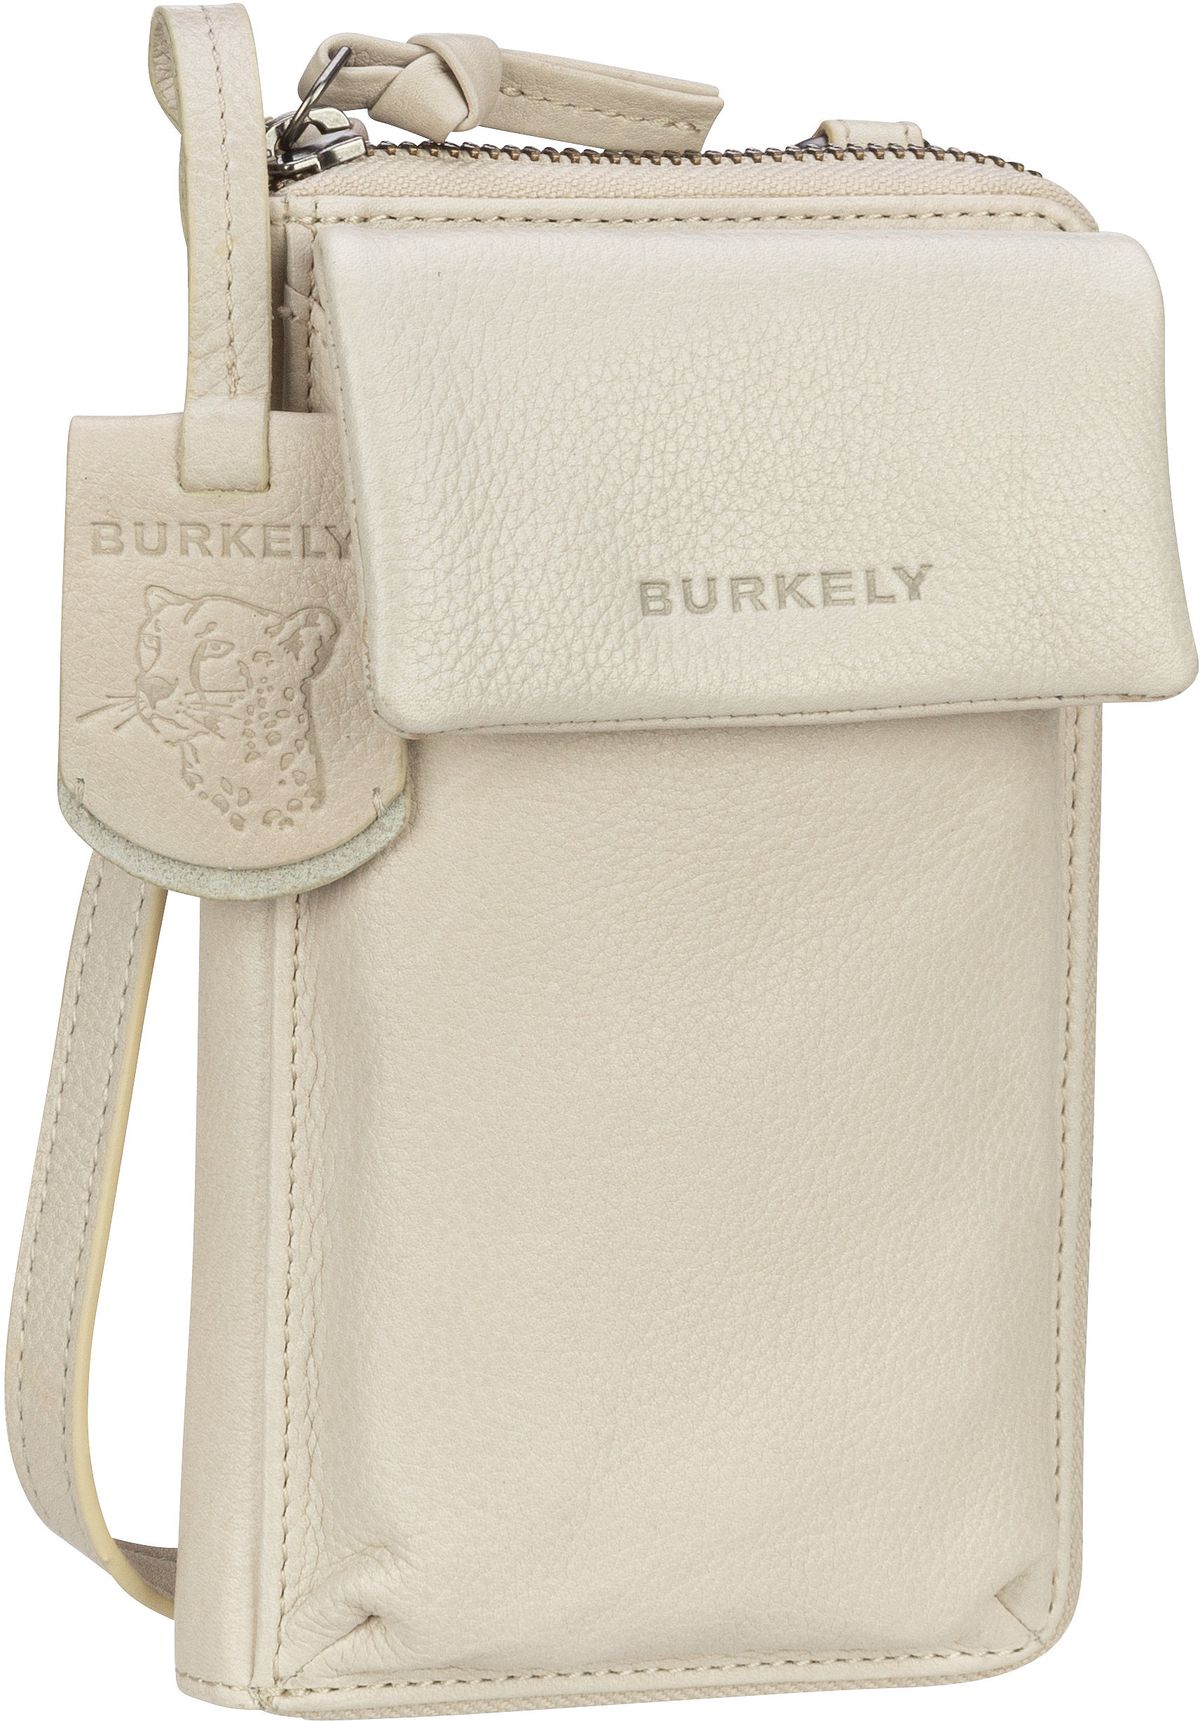 burkely -  Umhängetasche Just Jolie Phone Wallet Off White (0.5 Liter)